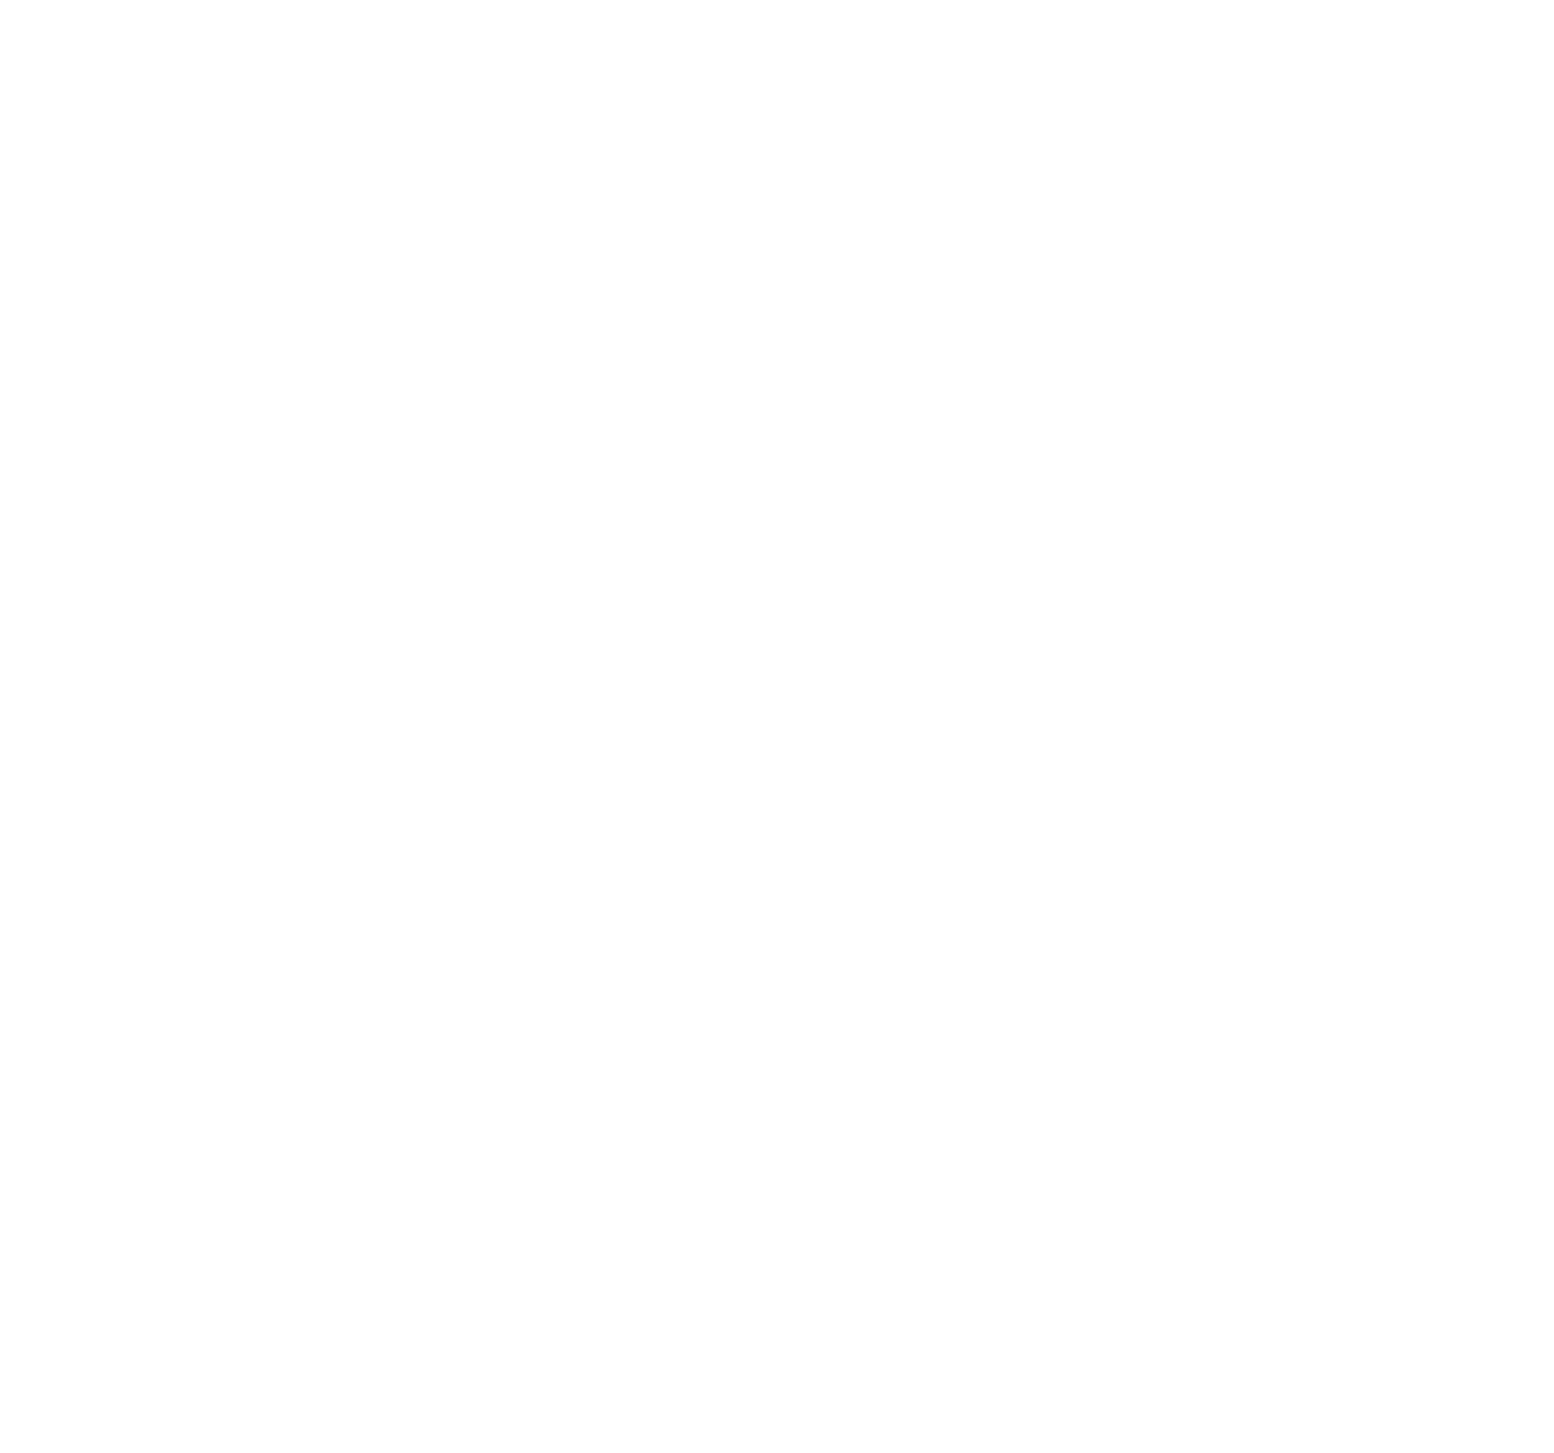 Dätwyler logo for dark backgrounds (transparent PNG)